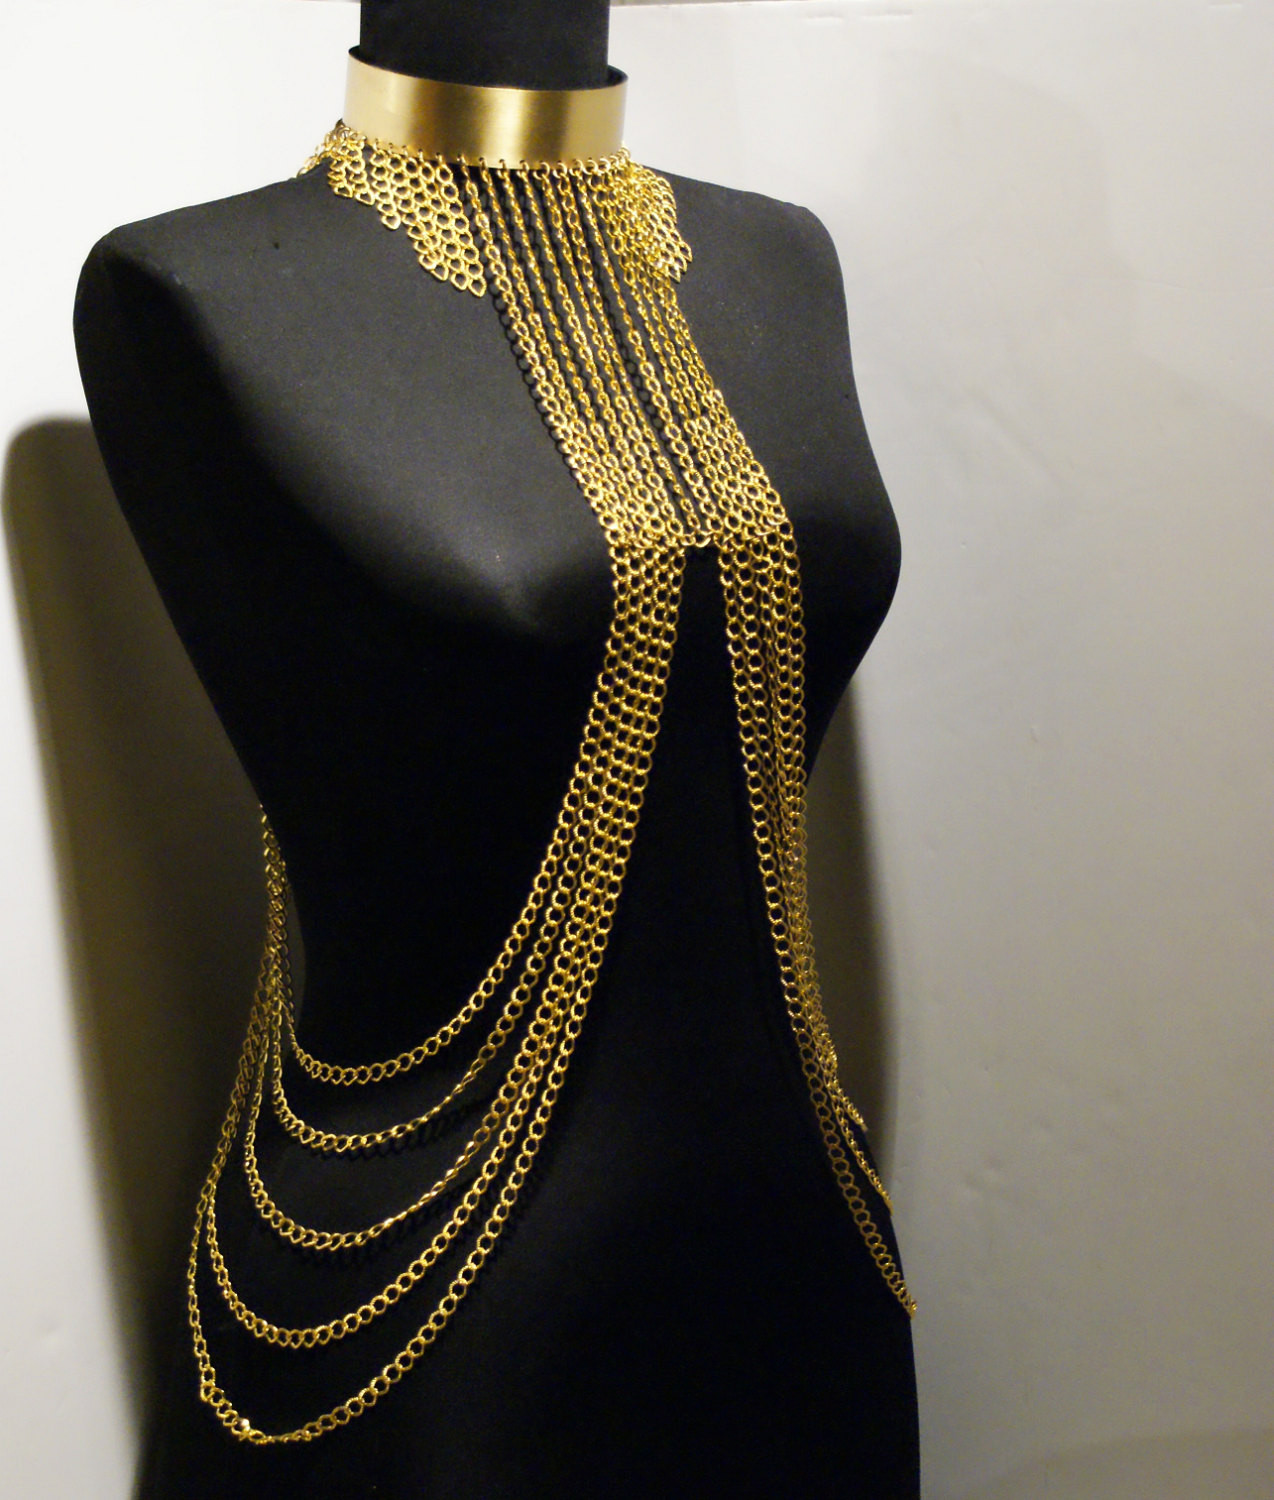 Body Jewelry Necklace
 gold body chain body jewelry chain by BeyhanAkman on Etsy